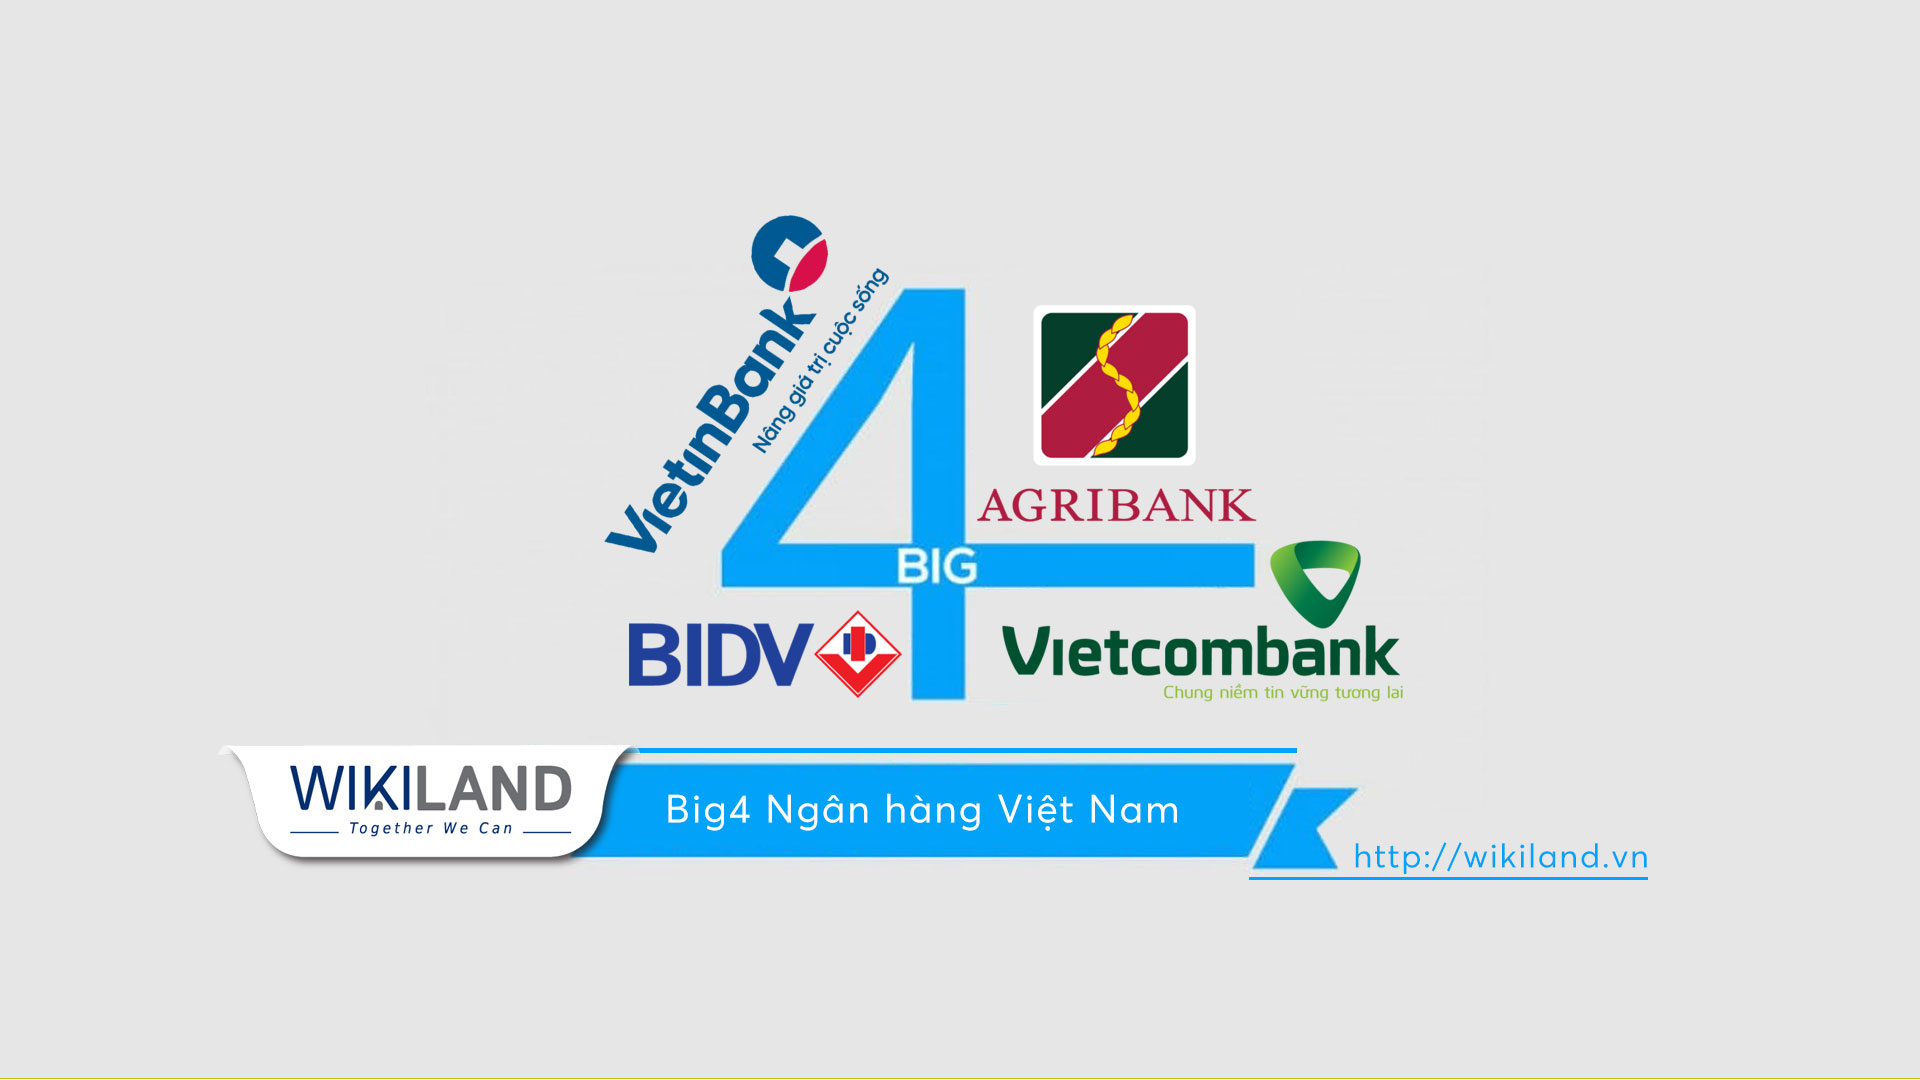 Big 4 Ngân hàng – sức ảnh hưởng đến nền tài chính Việt Nam